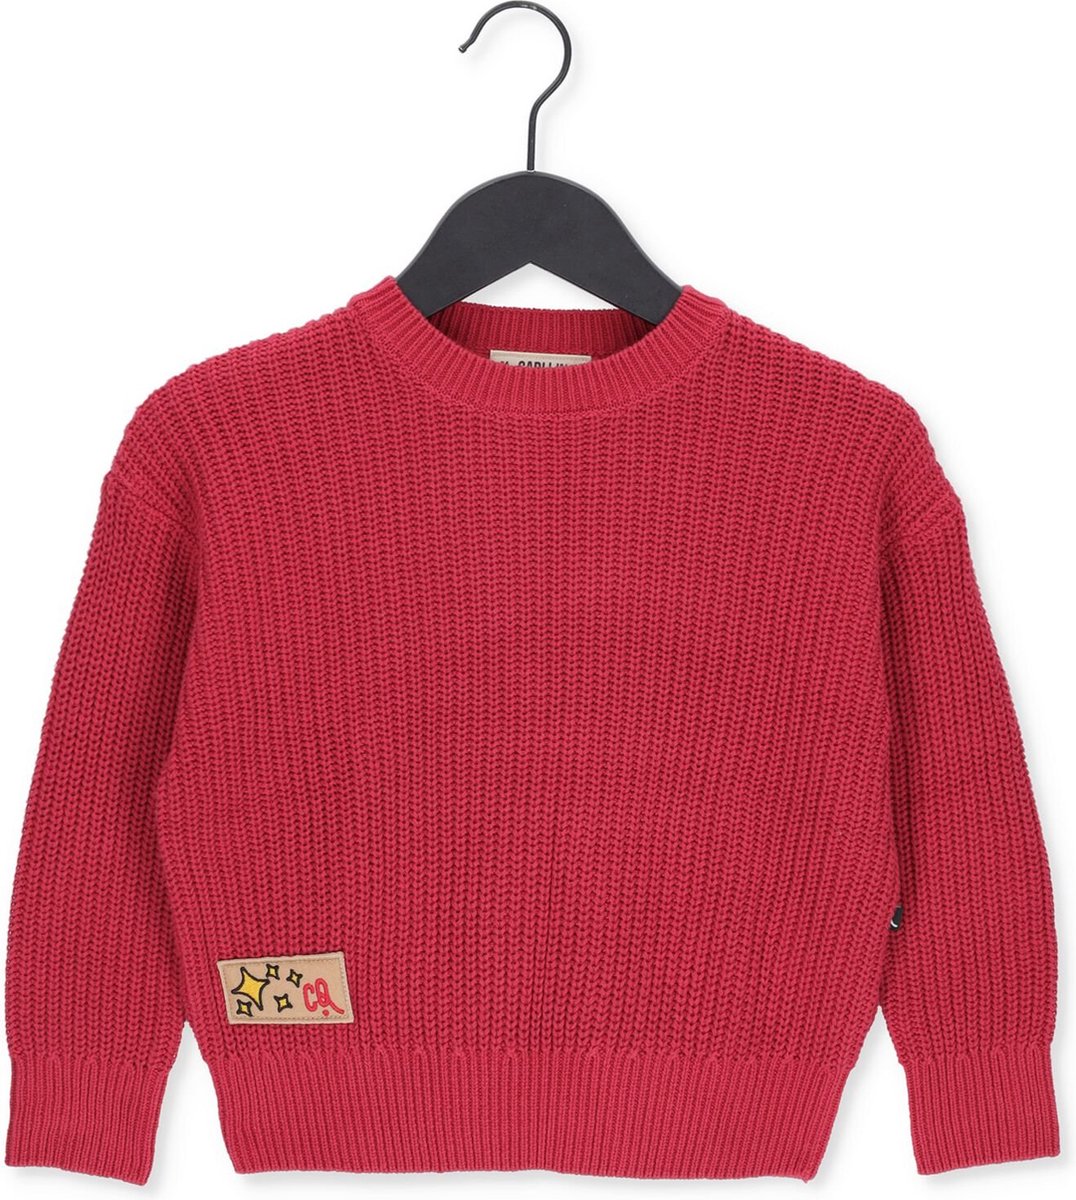 Carlijnq Knit - Sweater Truien & Vesten Jongens - Sweater - Hoodie - Vest- Rood - Maat 86/92